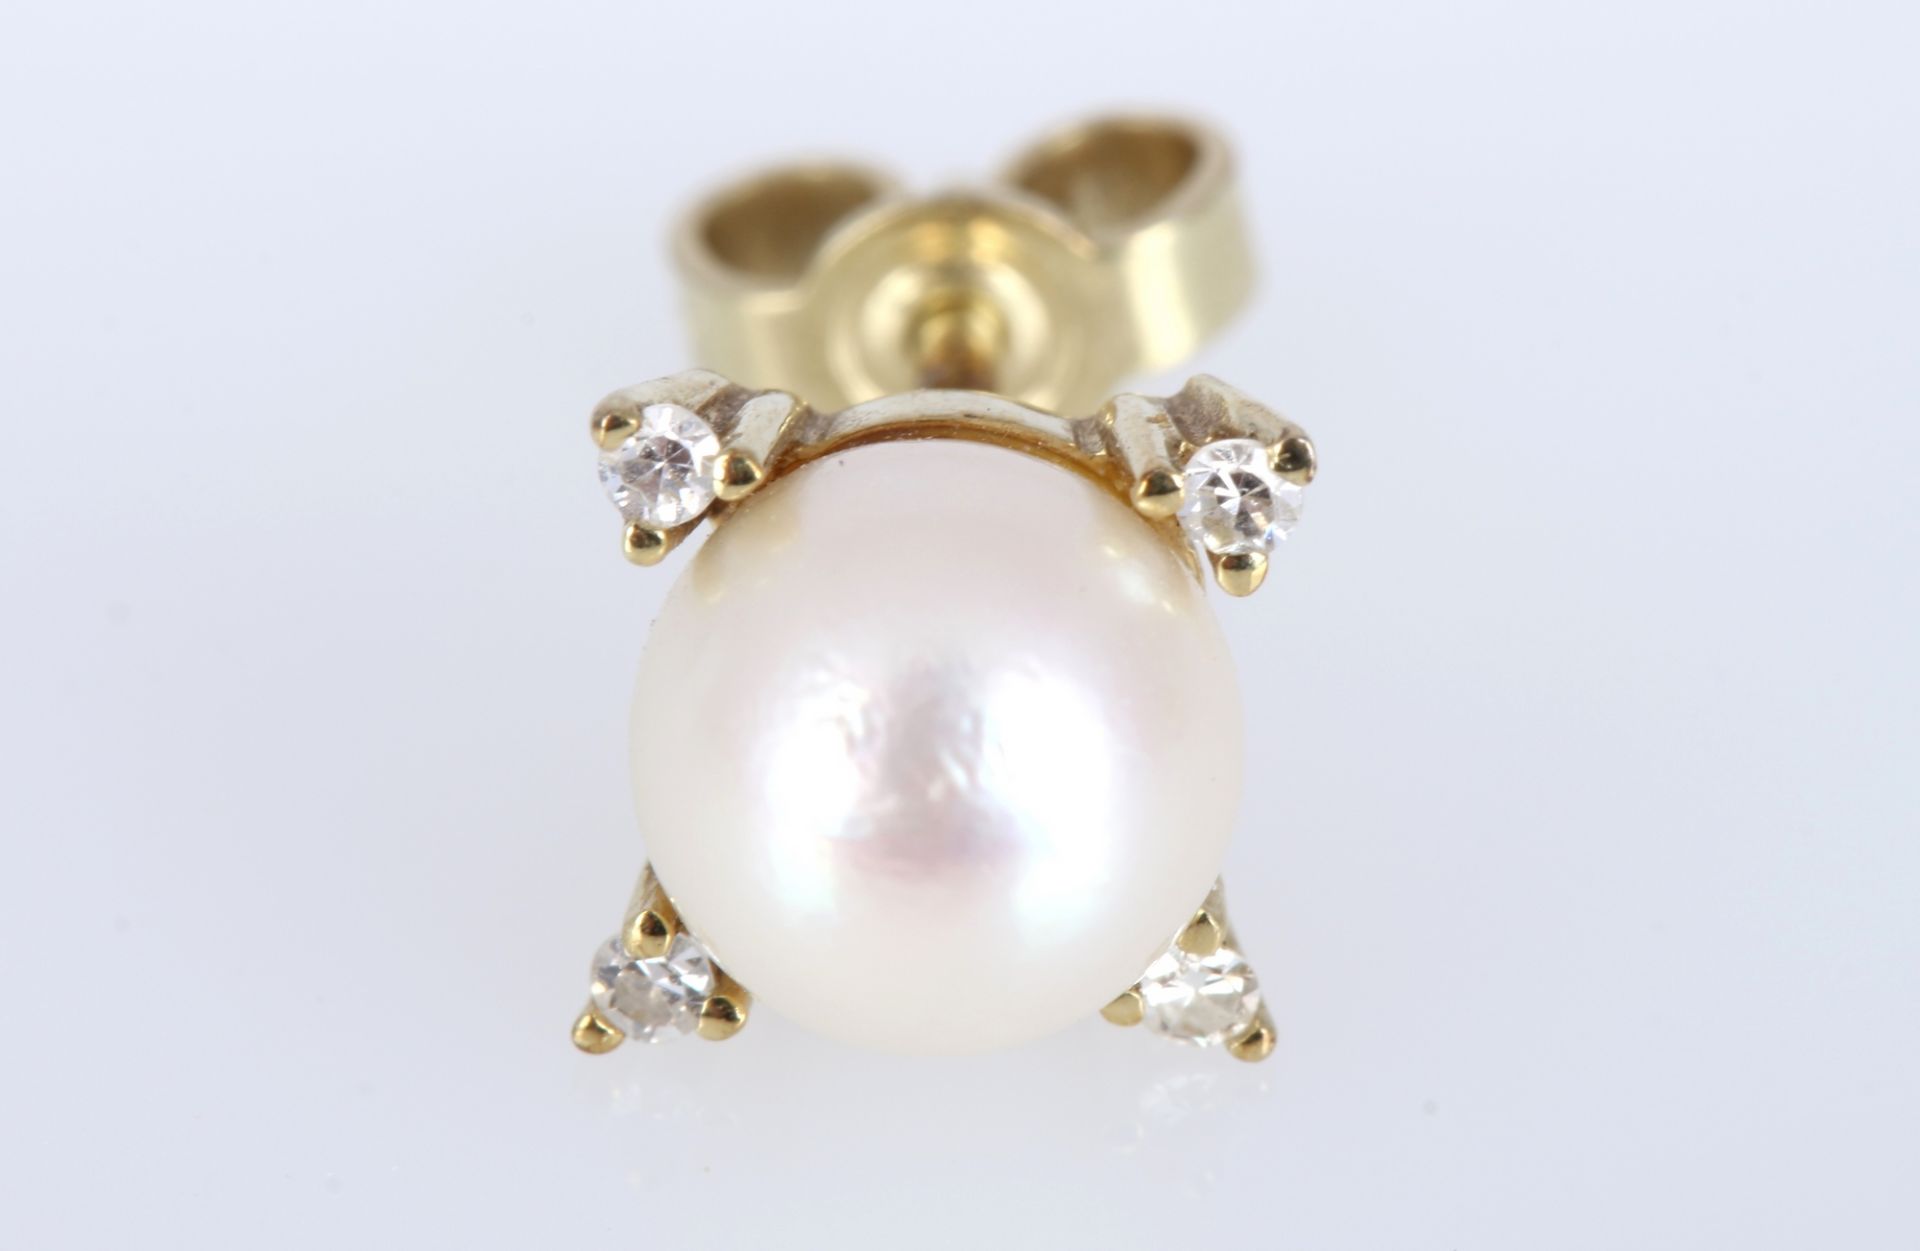 585 Gold Ohrstecker mit Perle und Brillanten, 14K gold ear studs with pearls and diamonds, - Bild 2 aus 4